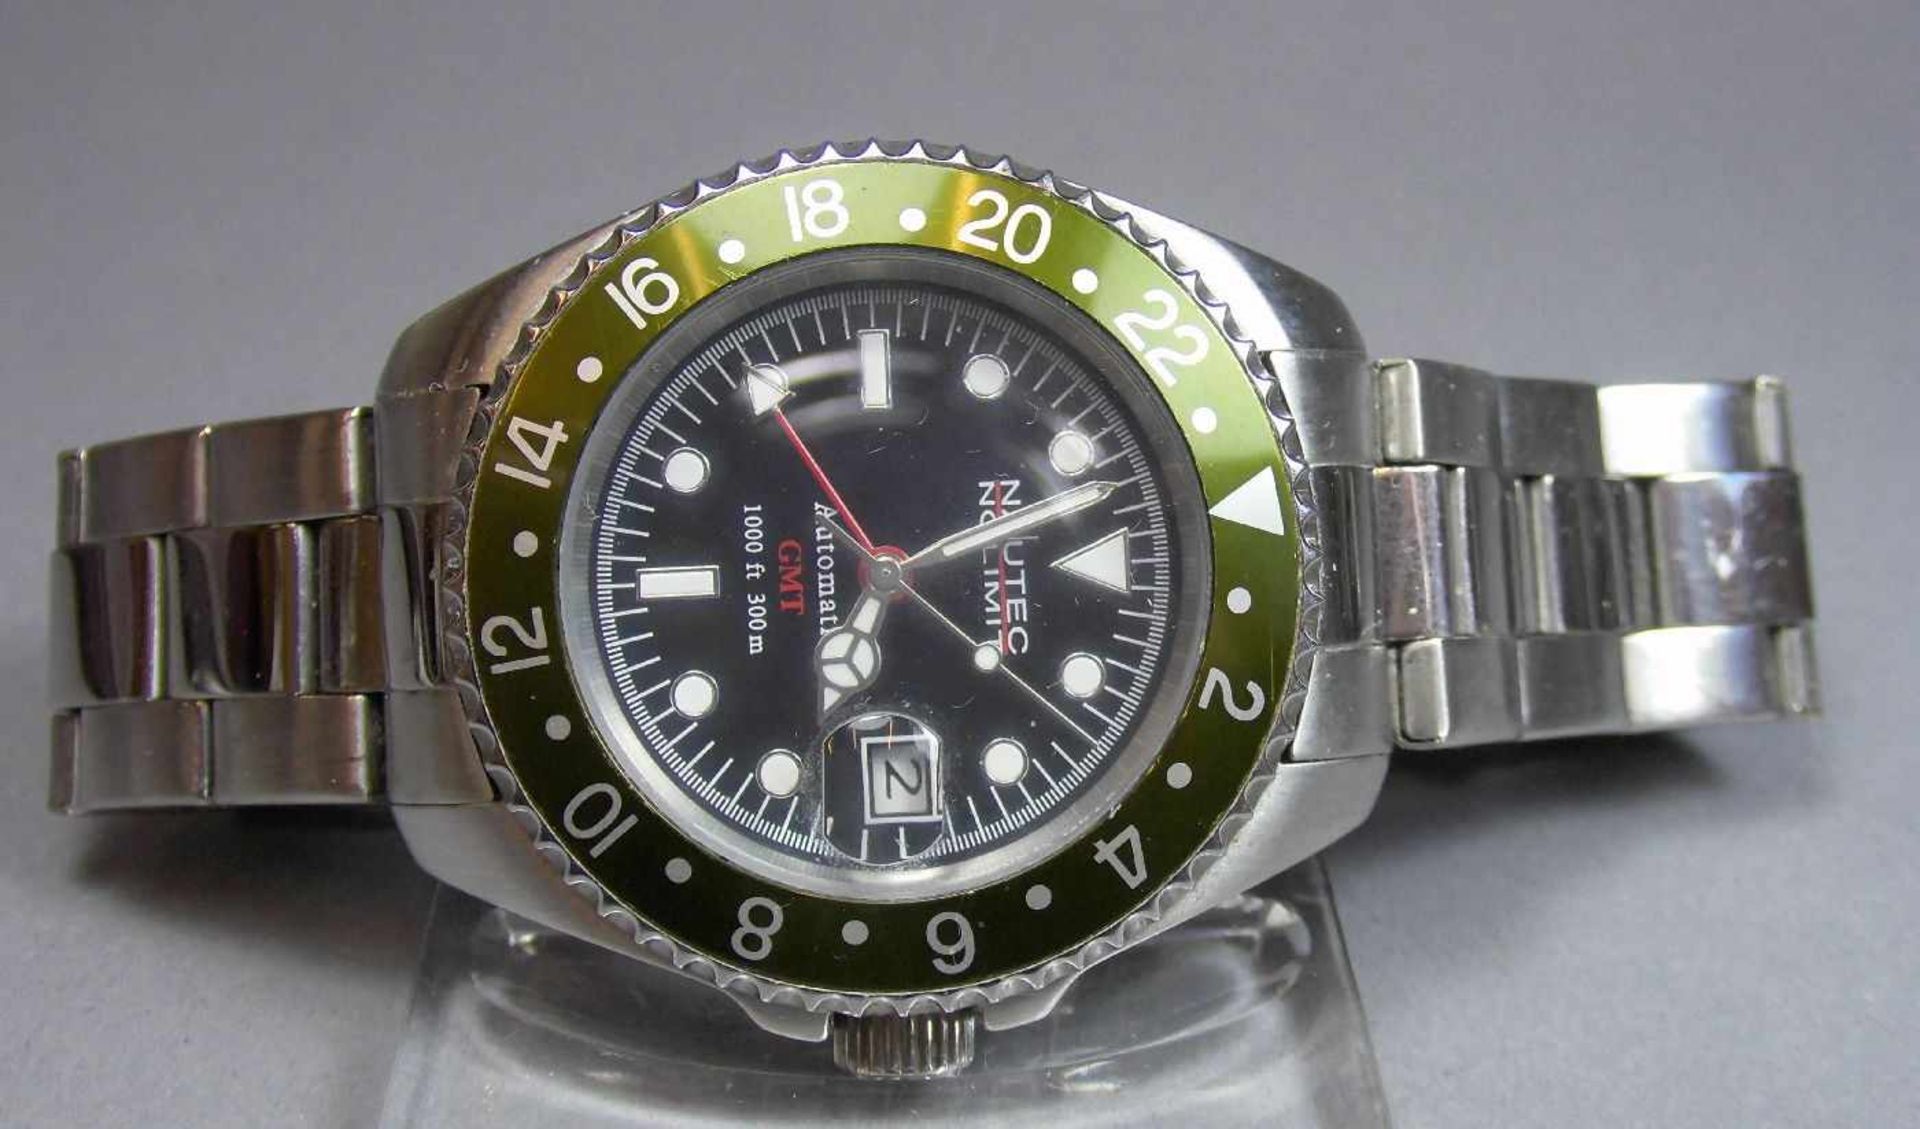 ARMBANDUHR : NAUTEK NO LIMIT GMT / wristwatch, Automatik-Uhr. Rundes Stahlgehäuse mit Gliederarmband - Bild 2 aus 7